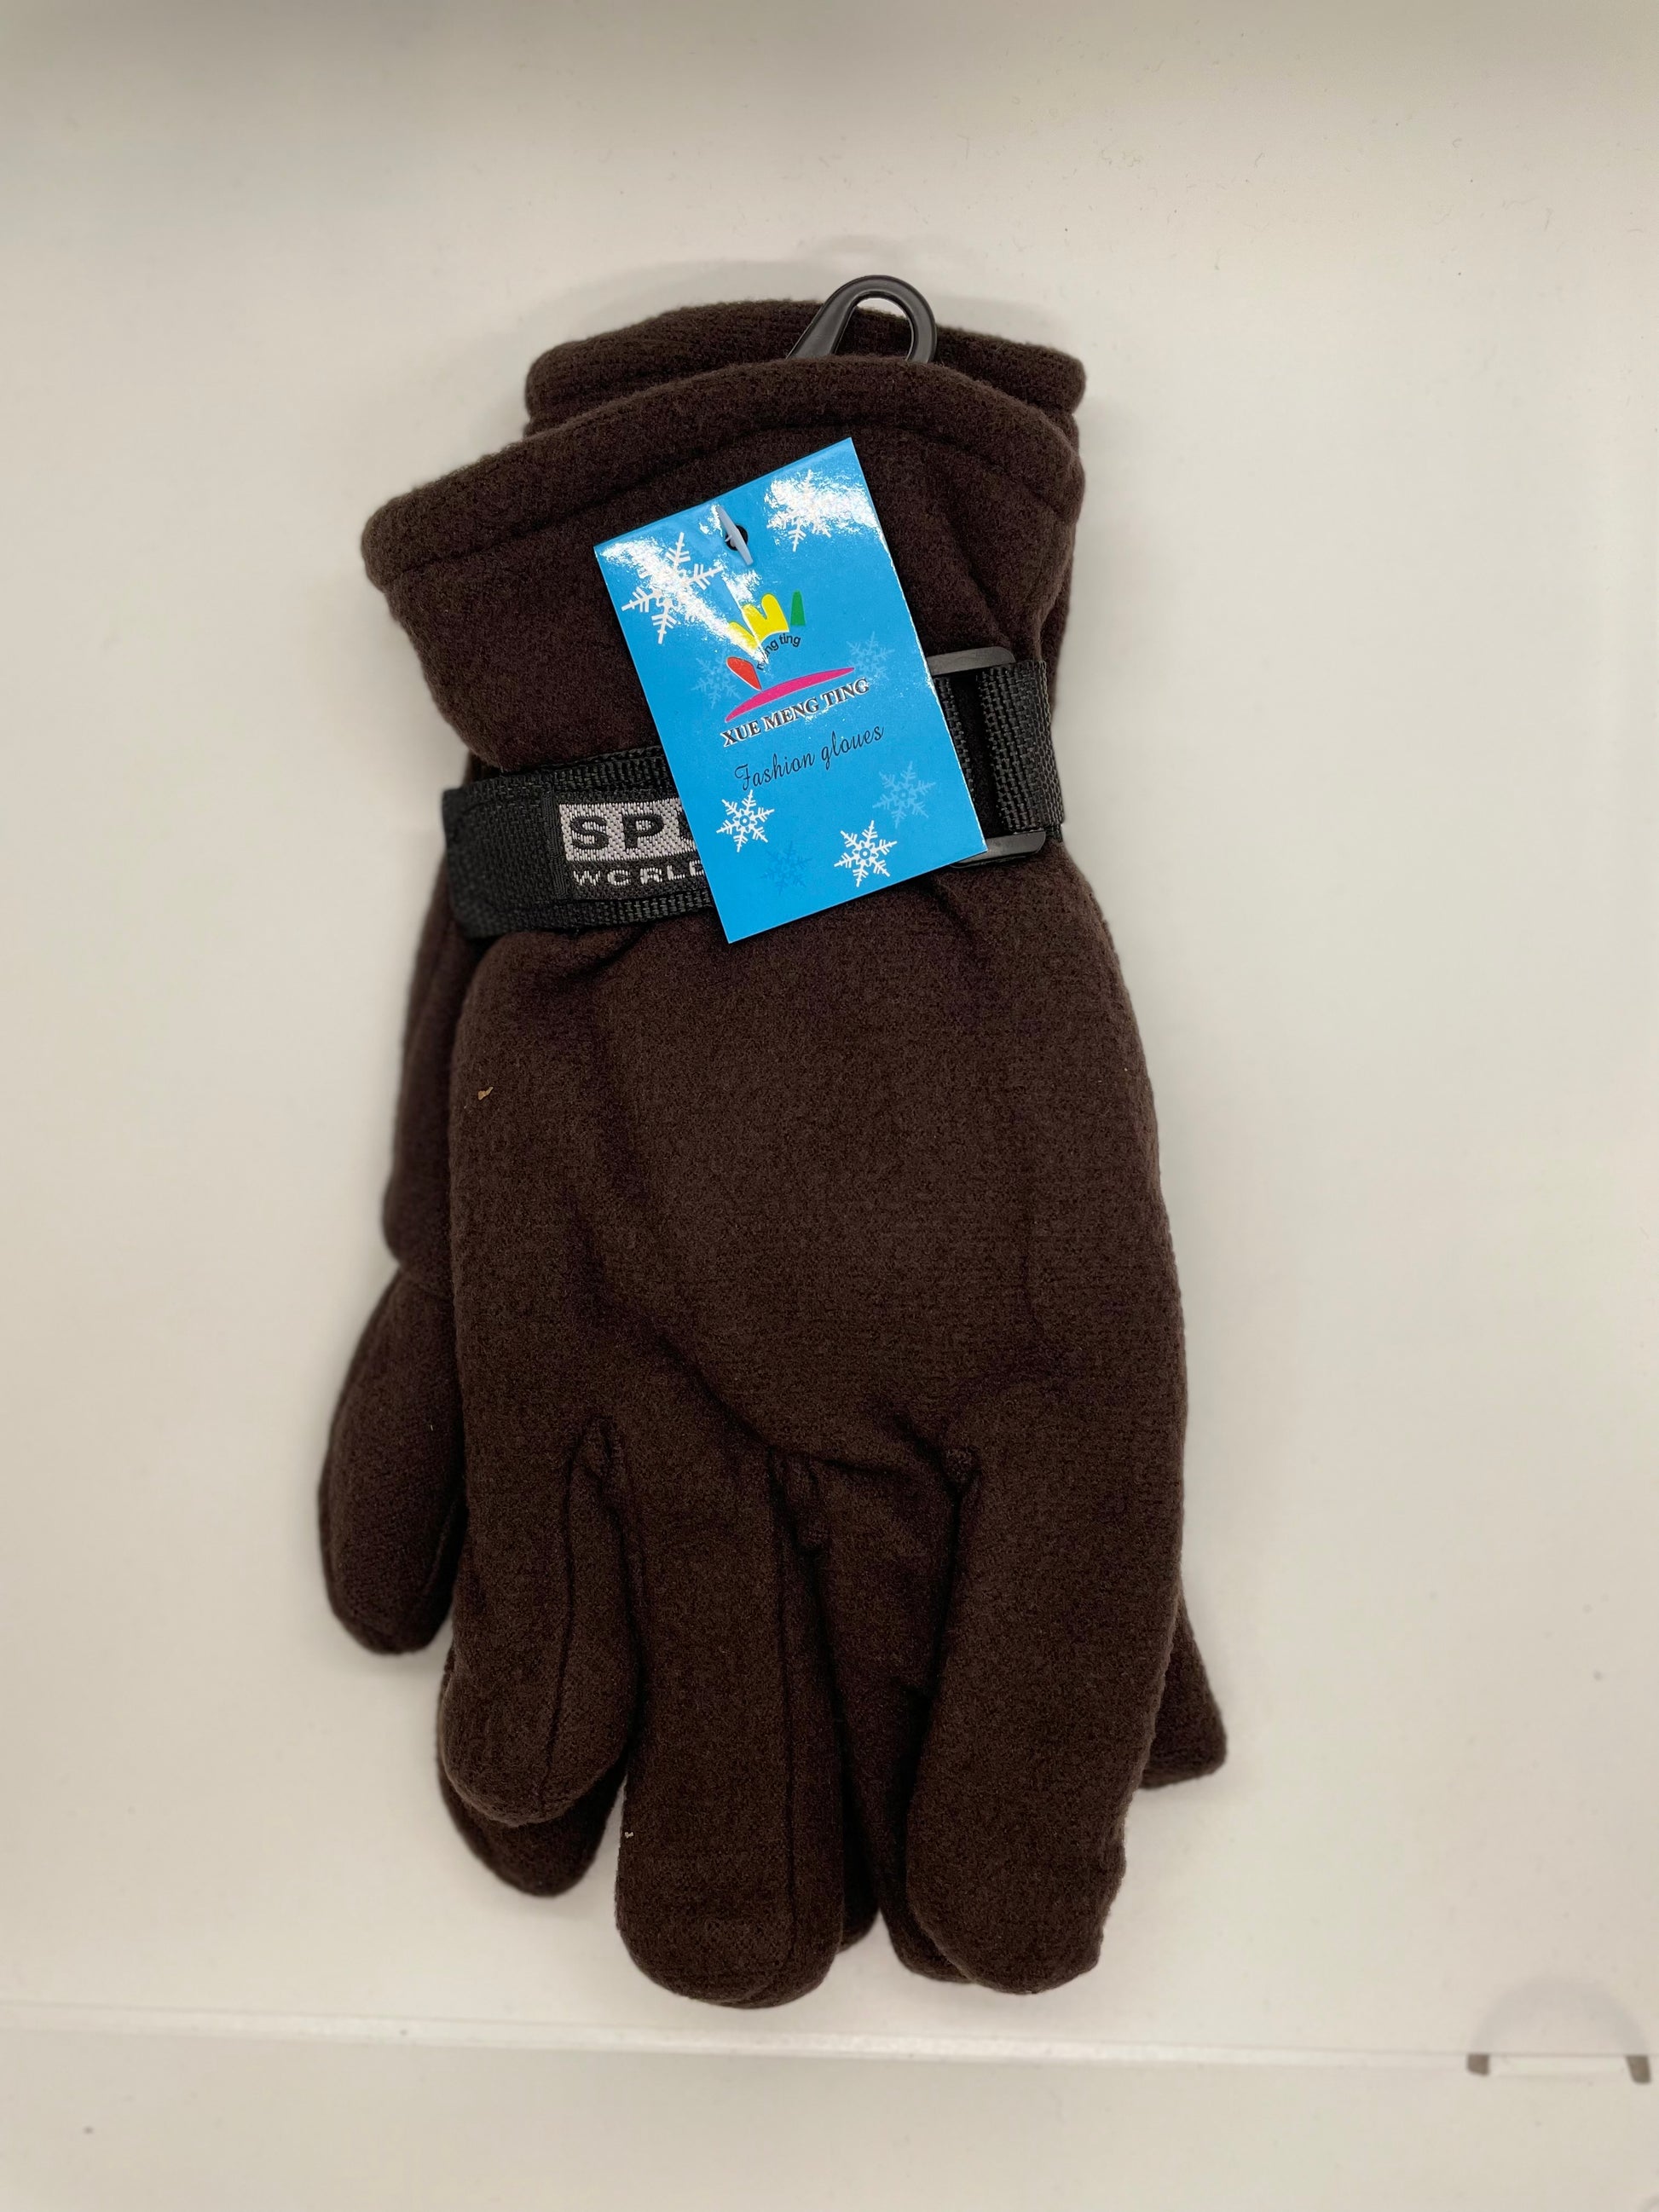 Cheap gloves for men